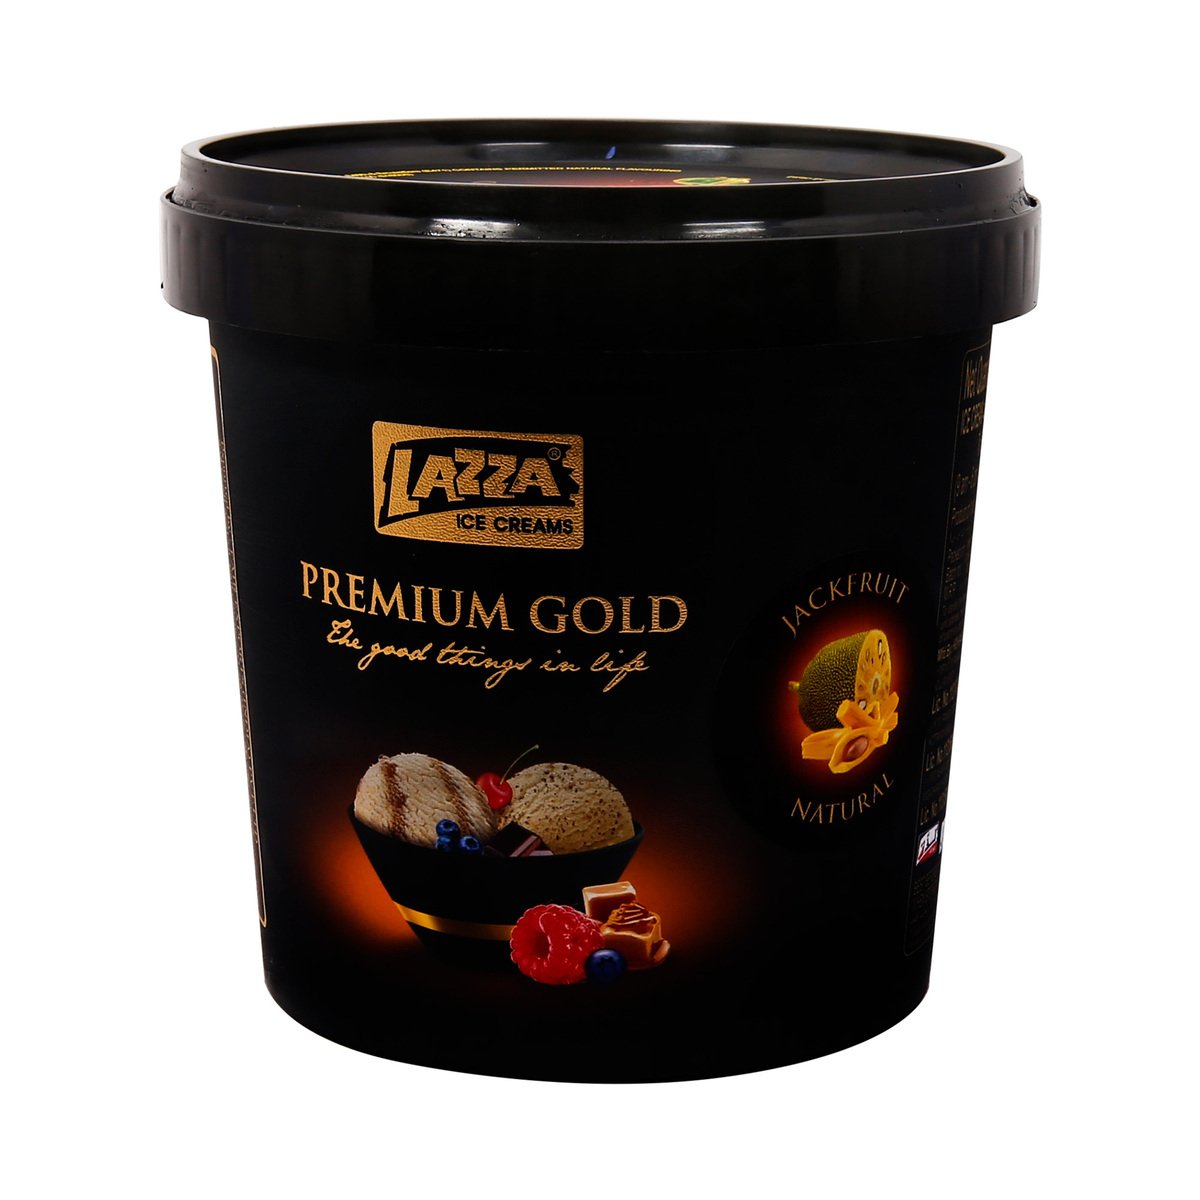 اشتري قم بشراء لذة آيس كريم جاك فروت طبيعي 1 لتر Online at Best Price من الموقع - من لولو هايبر ماركت Ice Cream Take Home في السعودية